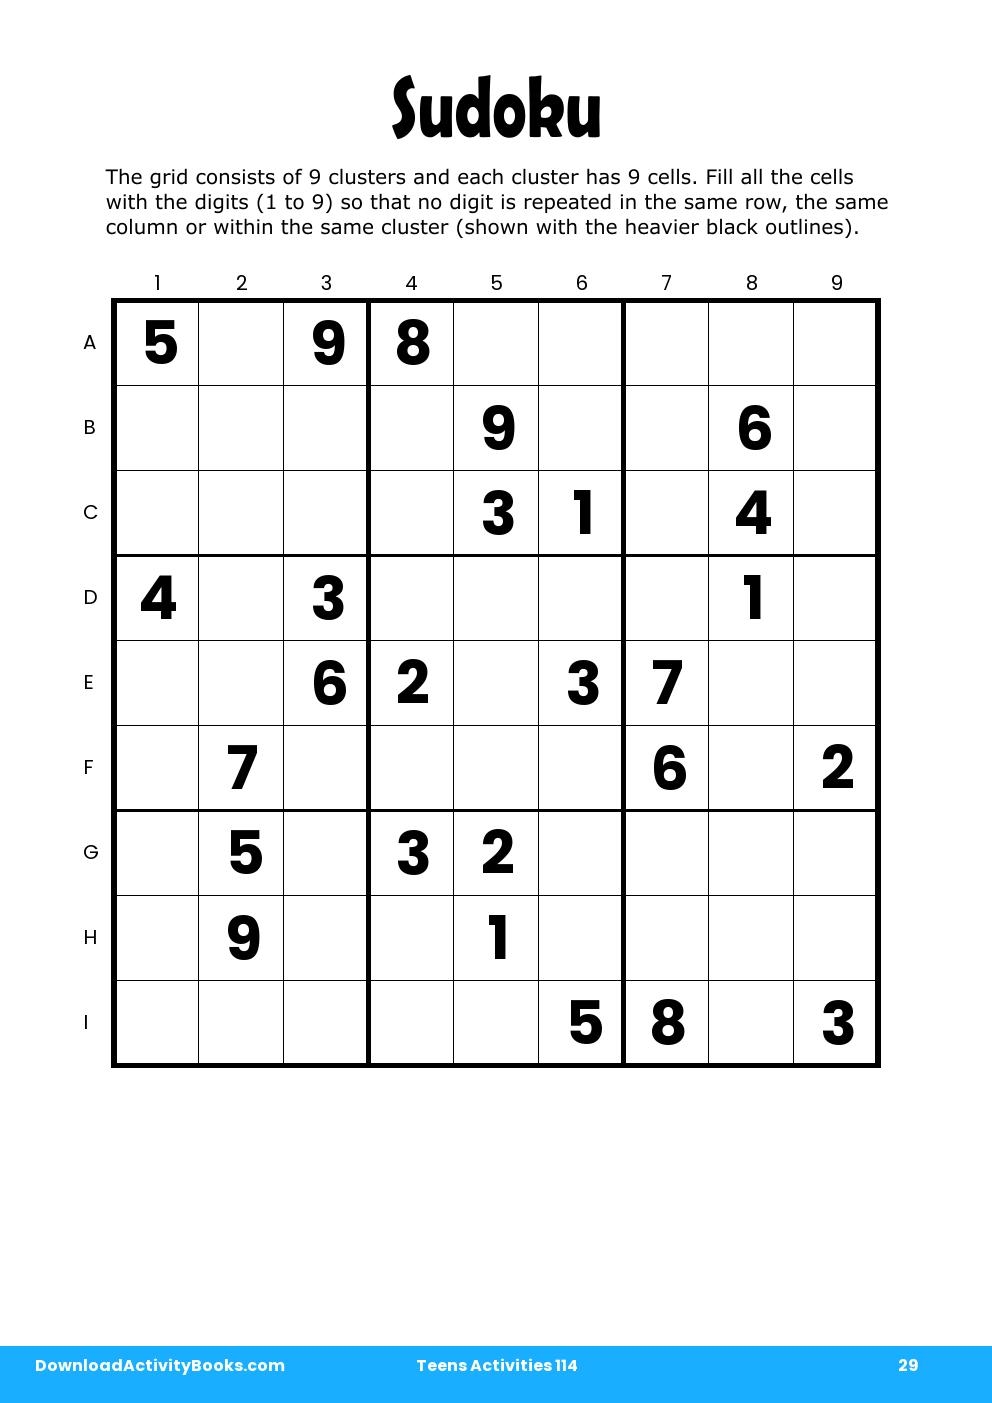 Sudoku in Teens Activities 114